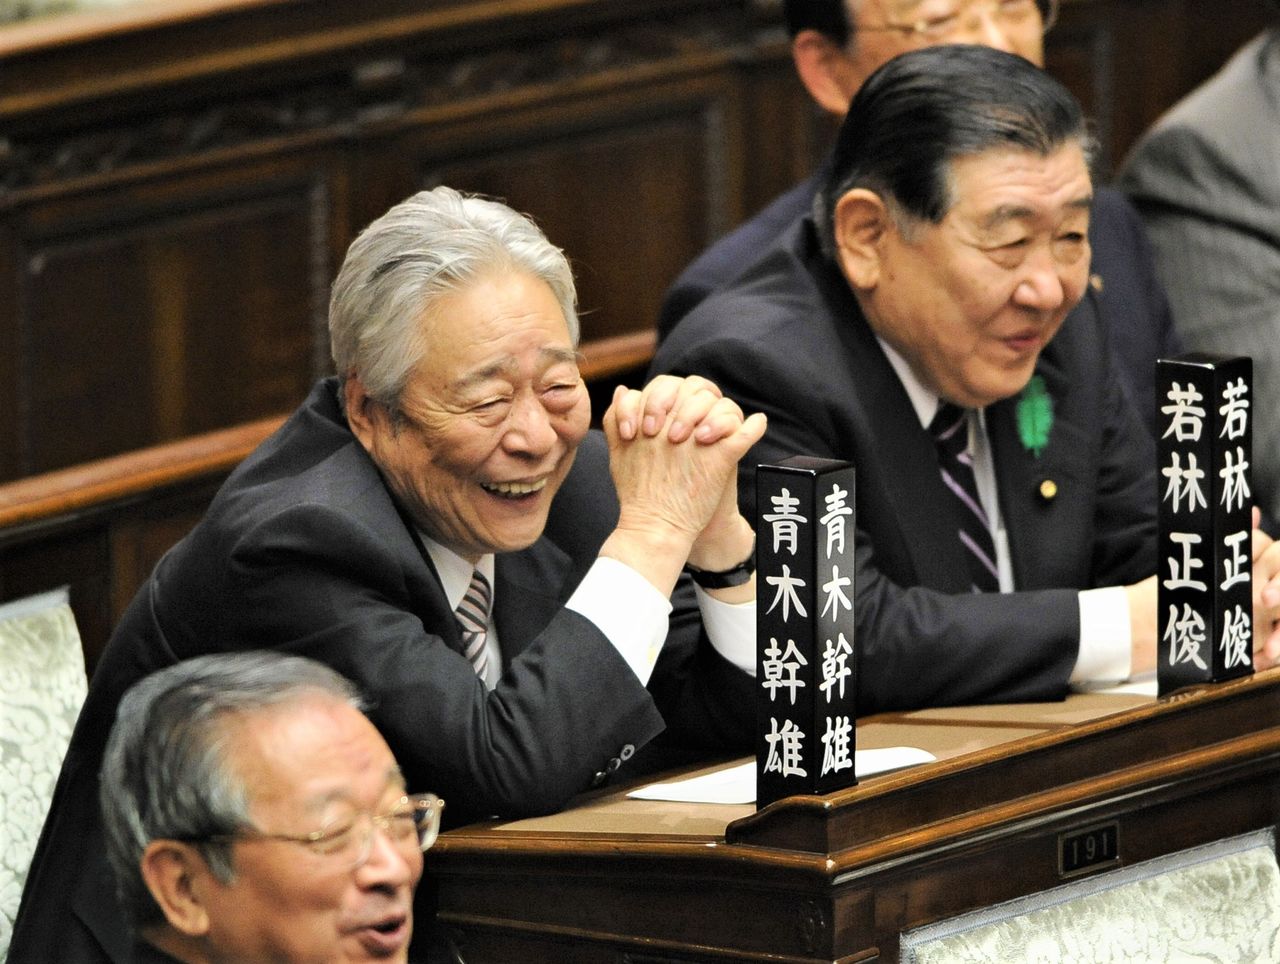  أؤكي ميكيؤ، المعروف باسم ”كبير مجلس الشيوخ، في الوسط على اليسار في يناير/ كانون الثاني 2010. (© جيجي برس)